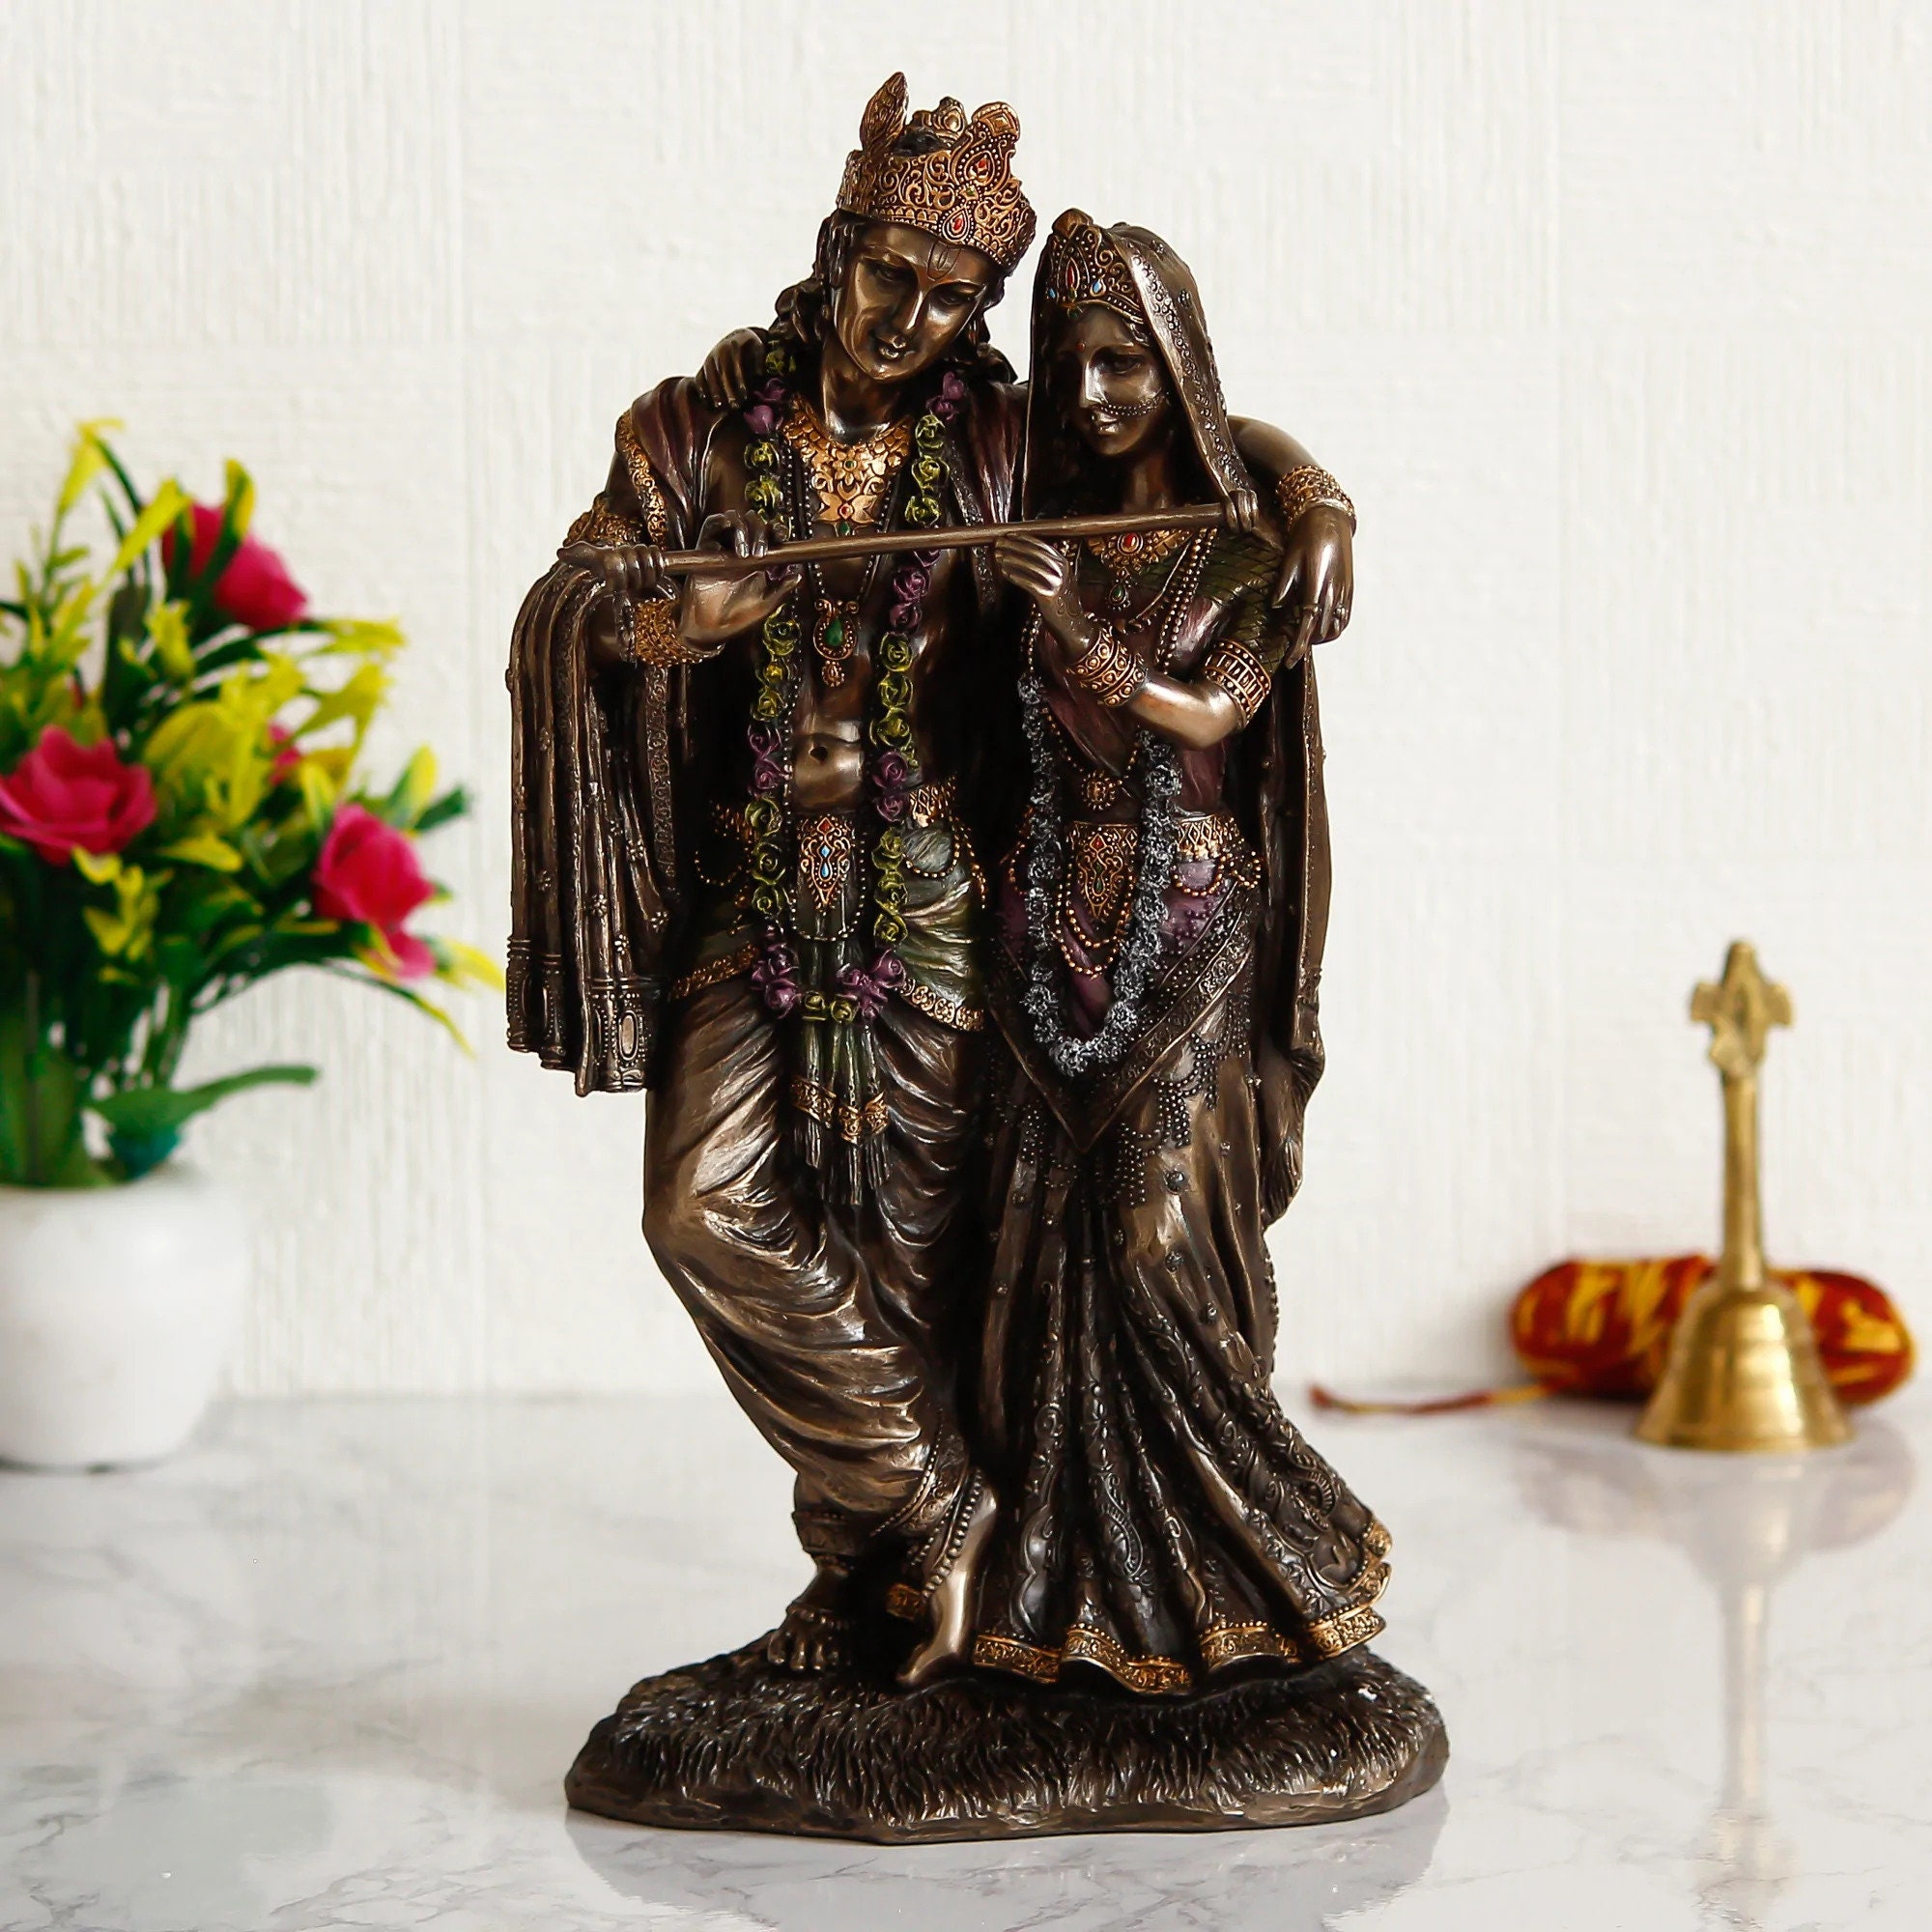 Radha Krishna Idol 11 Inch Bonded Bronze Radha Krishna Statue Standing Krishna Radha Murti